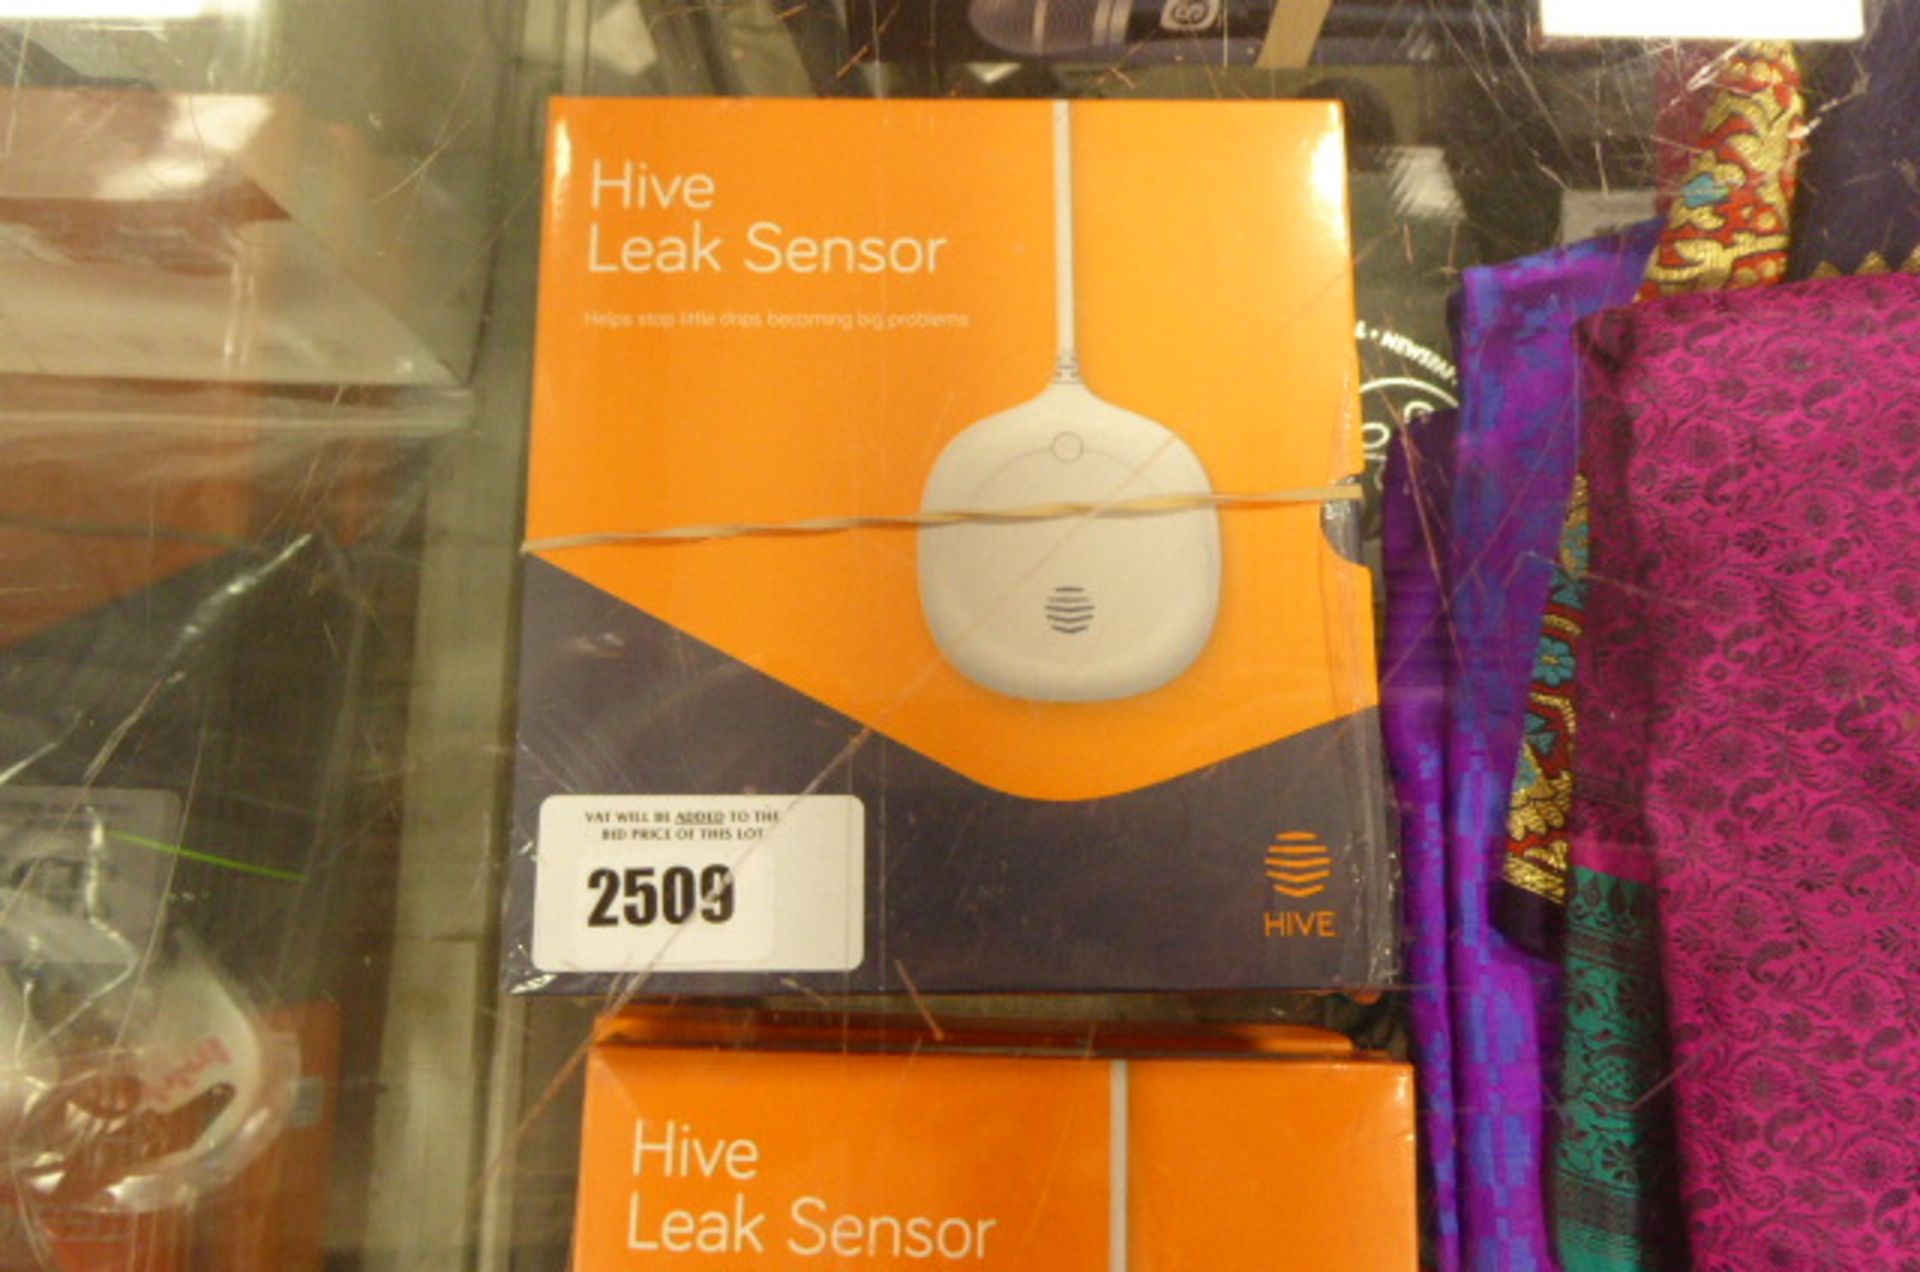 2356 3 packs of Hive leak sensors